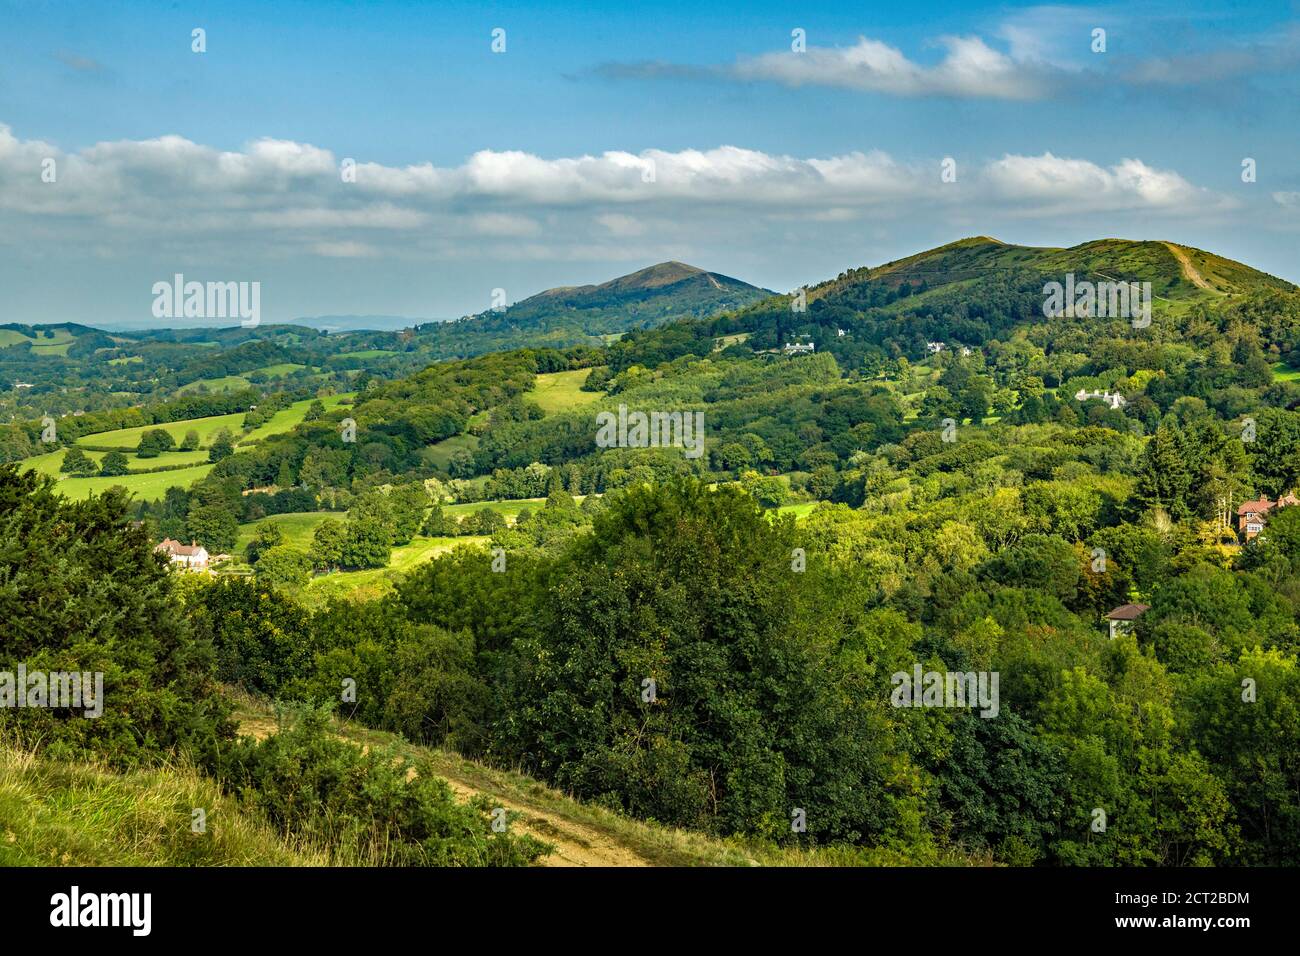 La section nord des collines de Malvern, frontière entre Herefordshire et Worcestershire en Angleterre, en septembre. Banque D'Images